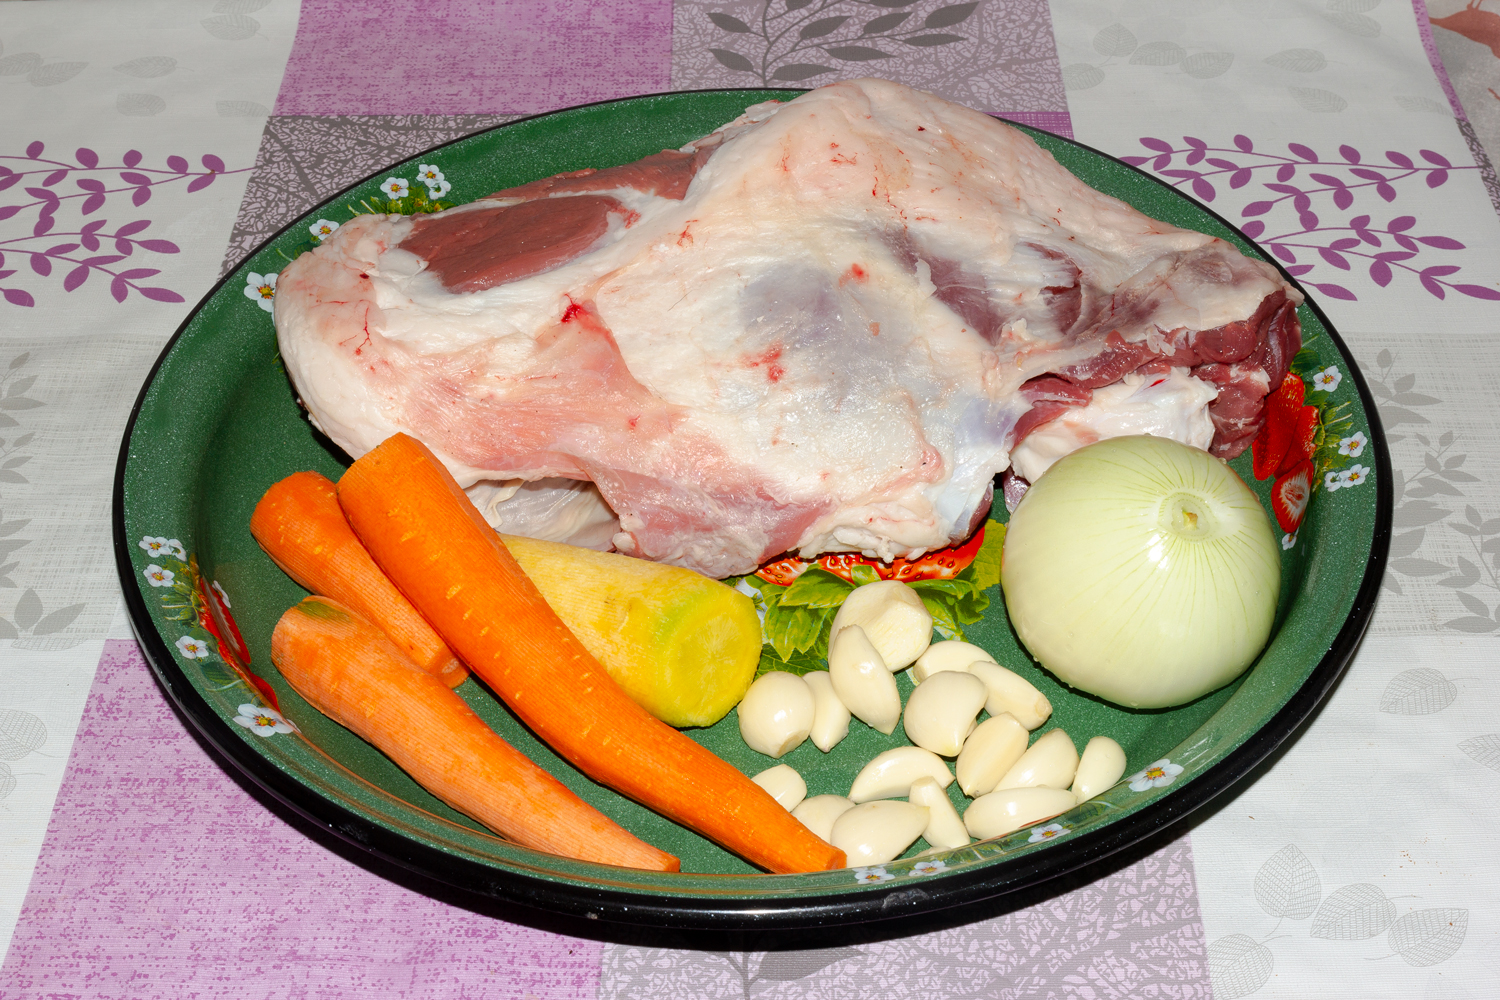 продукты для рецепта  Баранина с овощами в духовке 